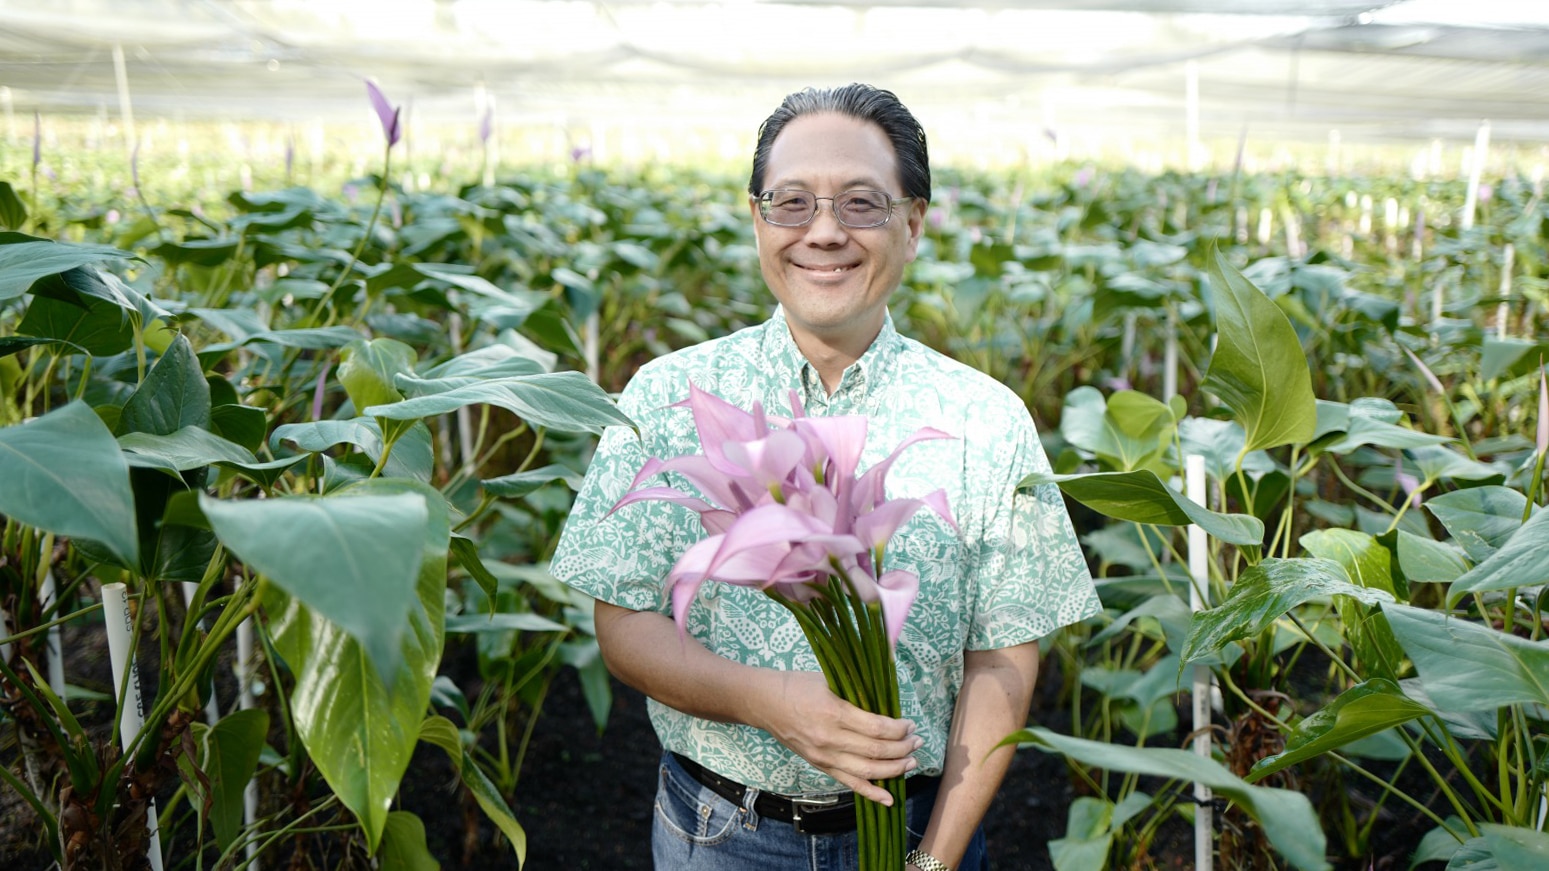 旅と花vol 5 トロピカルフラワーに込めたアロハ 愛 を届けたい ハワイ島の農家 Tabippo Net